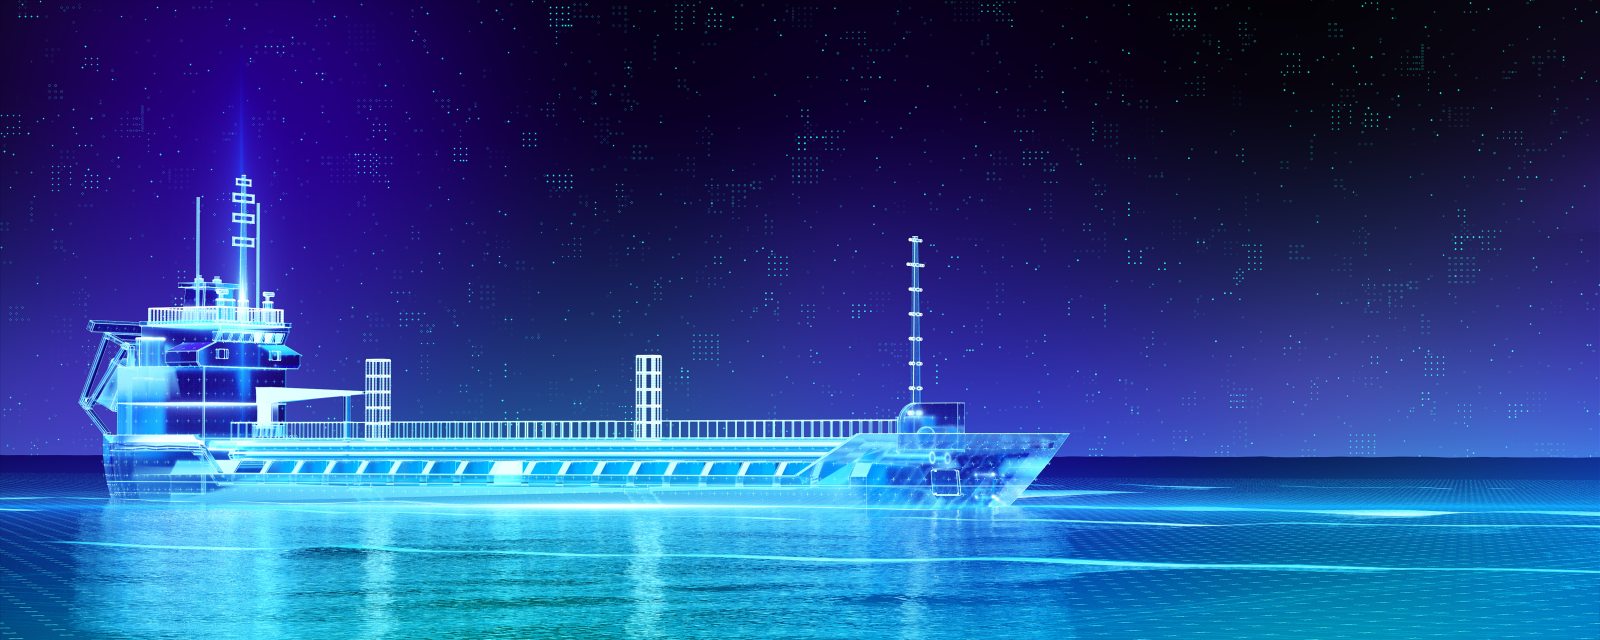 Großes Containerschiff fährt im futuristischen Design